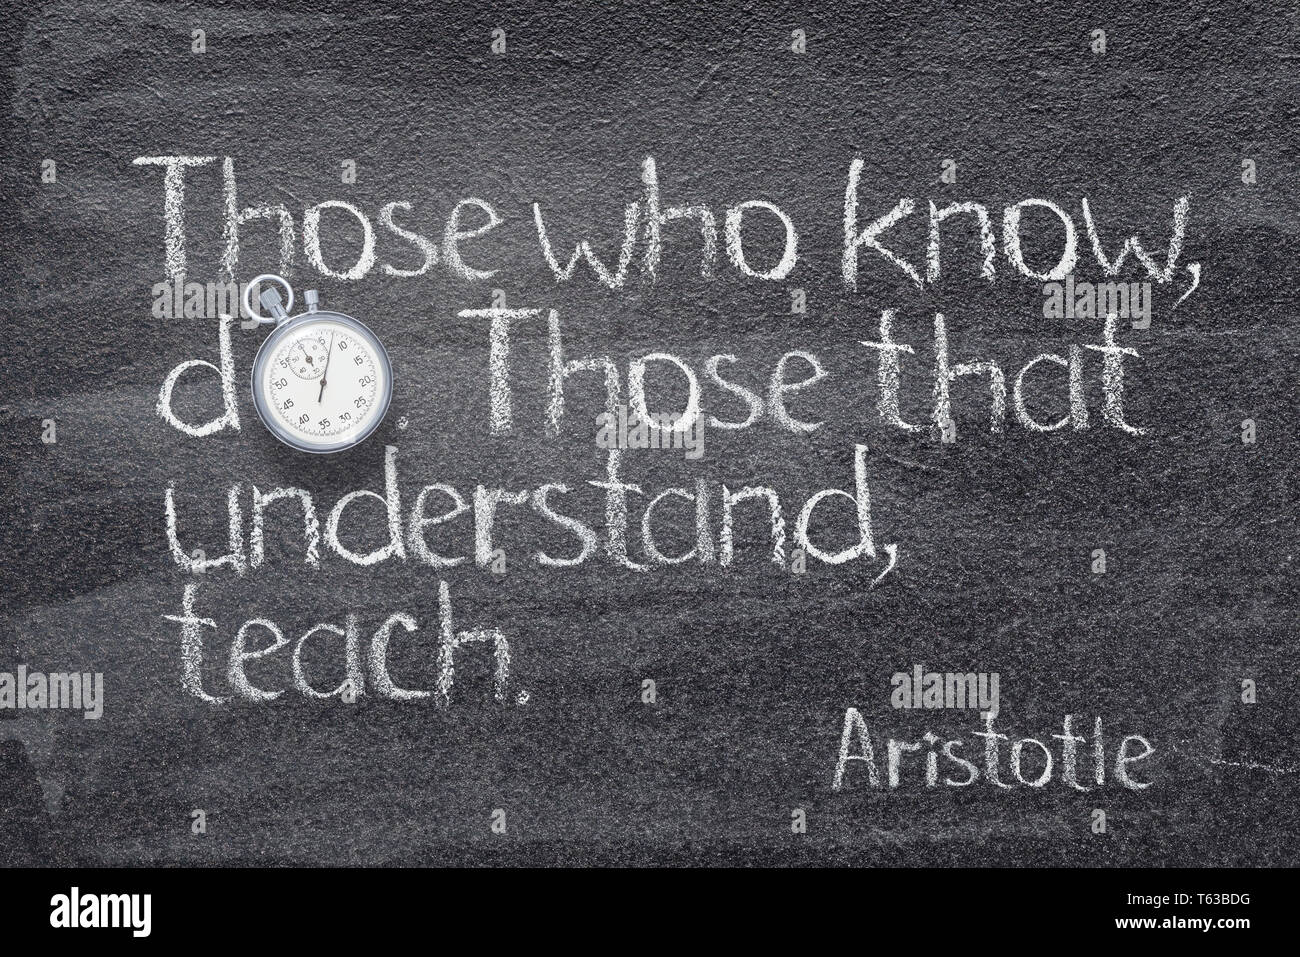 Diejenigen, die wissen, tun. Diejenigen, die verstehen, Teach-Zitat des antiken griechischen Philosophen Aristoteles auf Schiefertafel mit Vintage Stoppuhr geschrieben Stockfoto